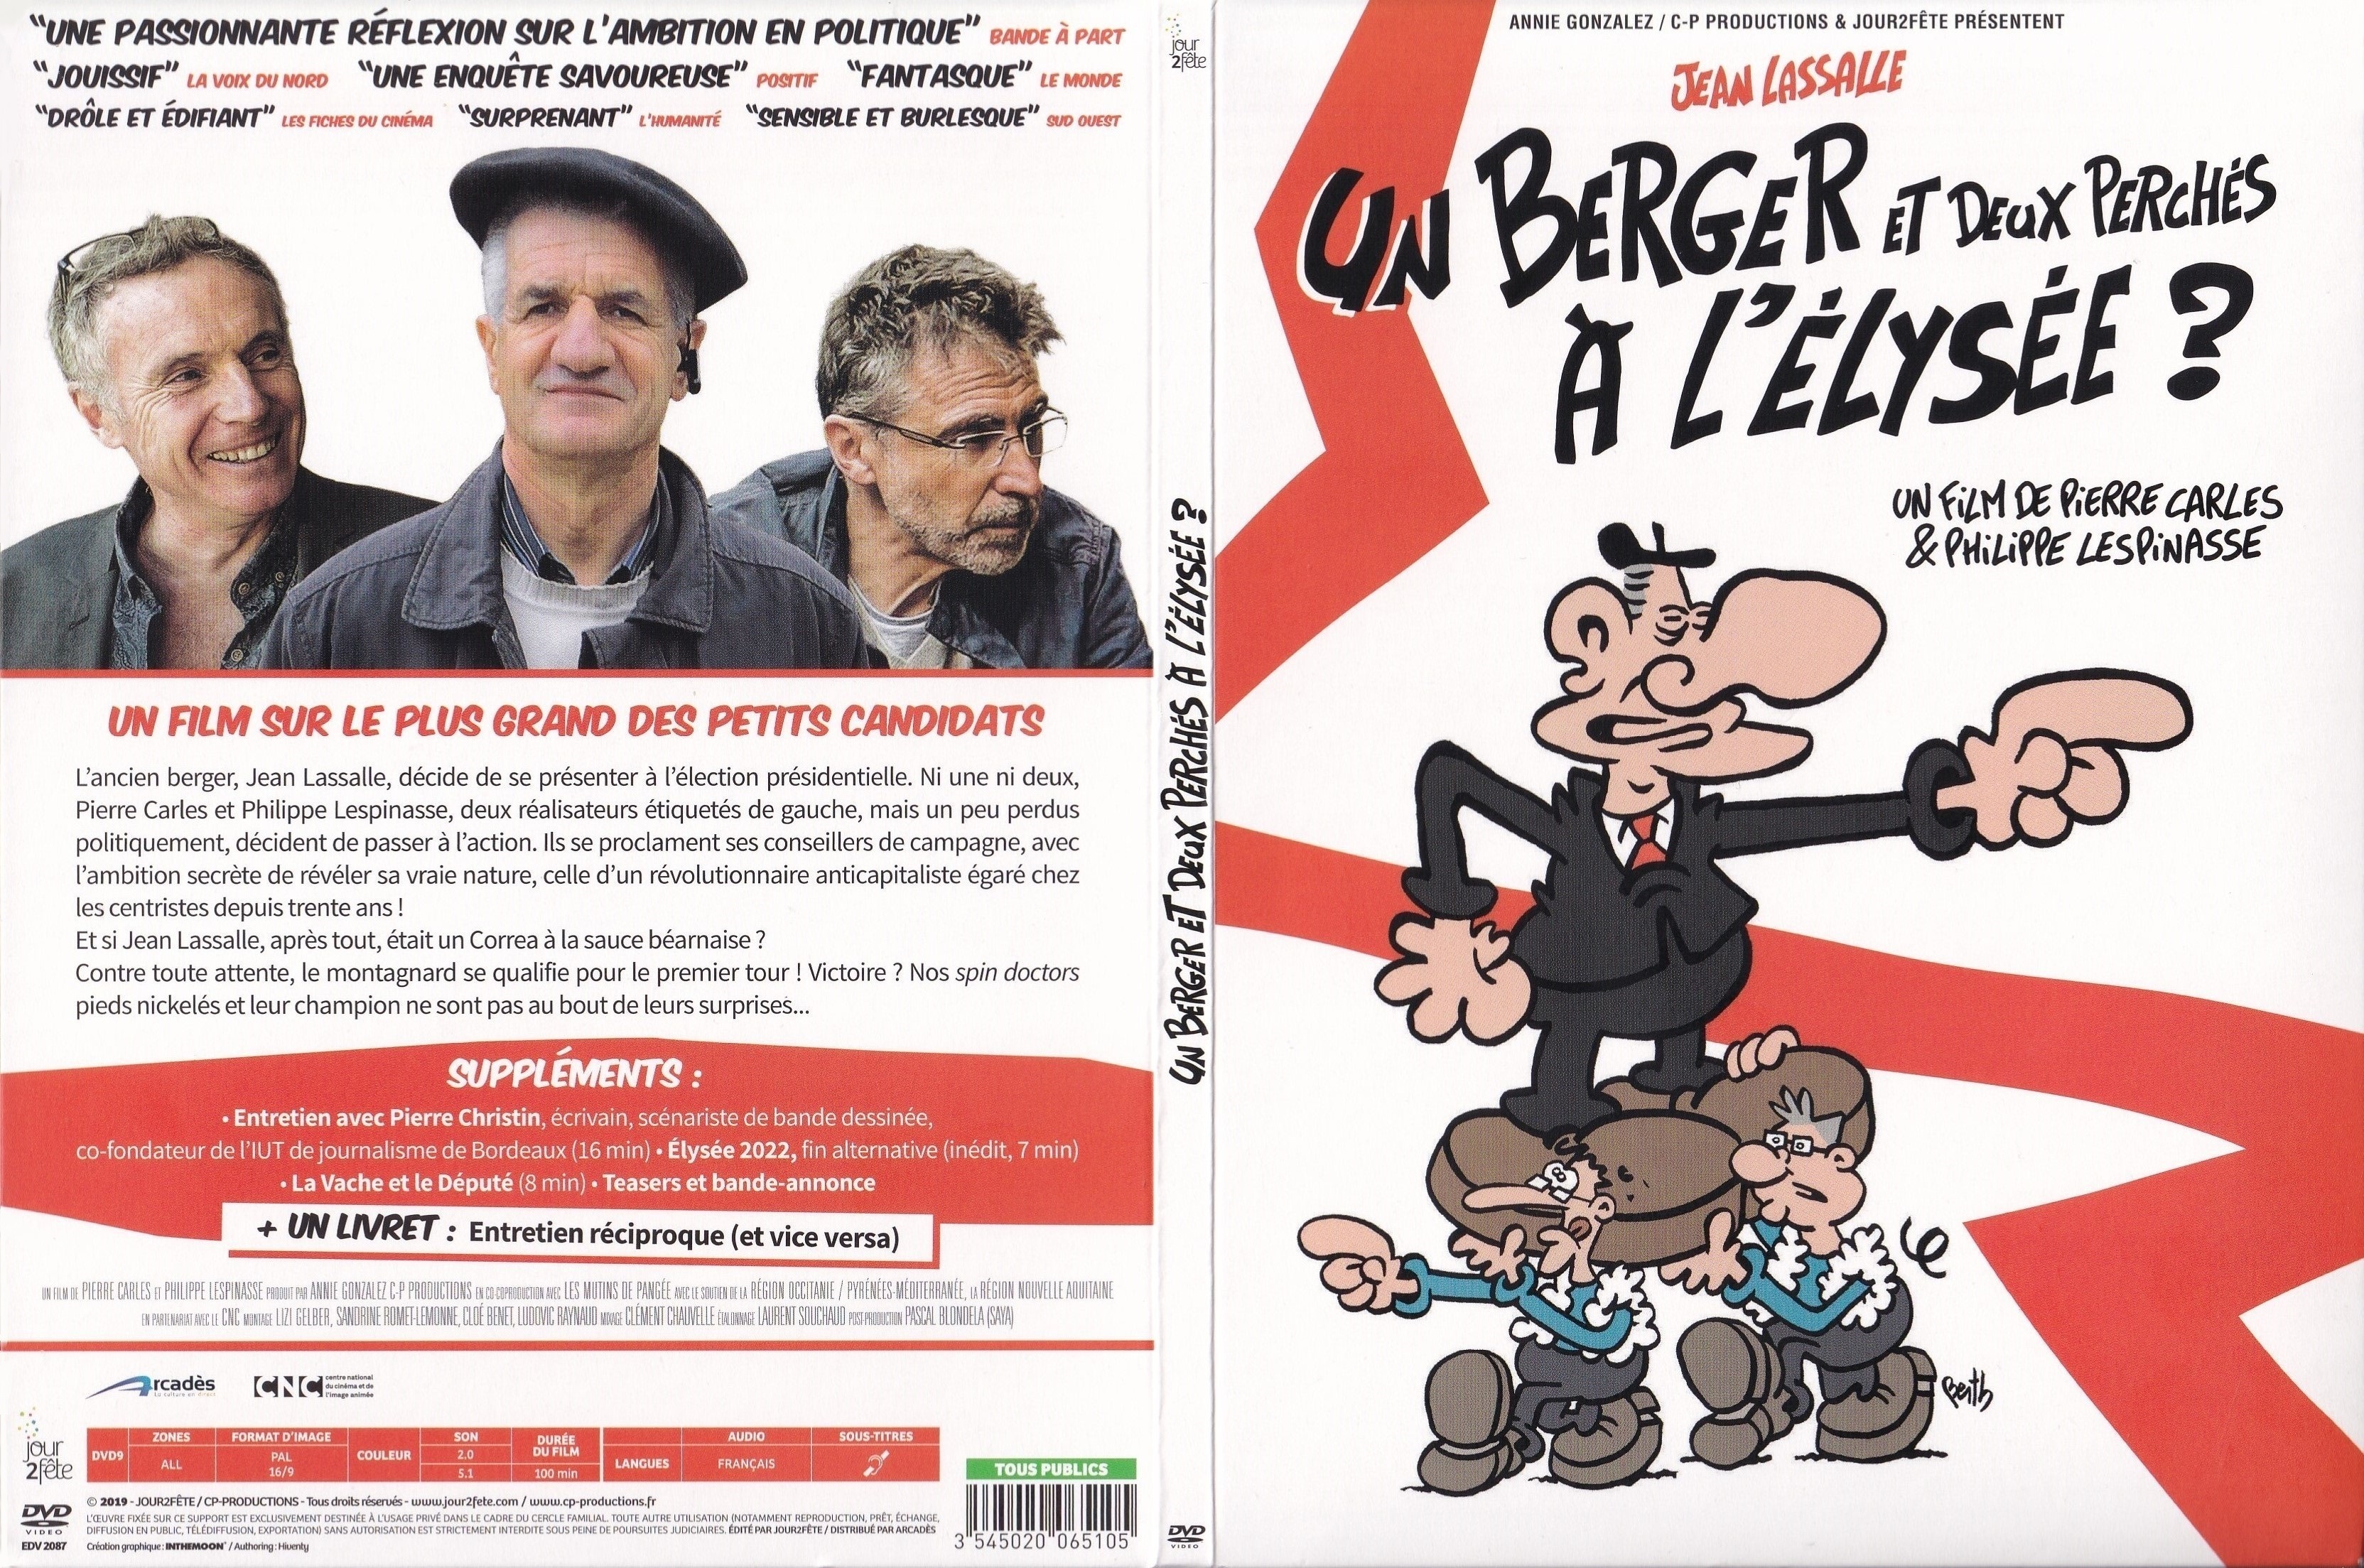 Jaquette DVD Un Berger et deux Perchs  l